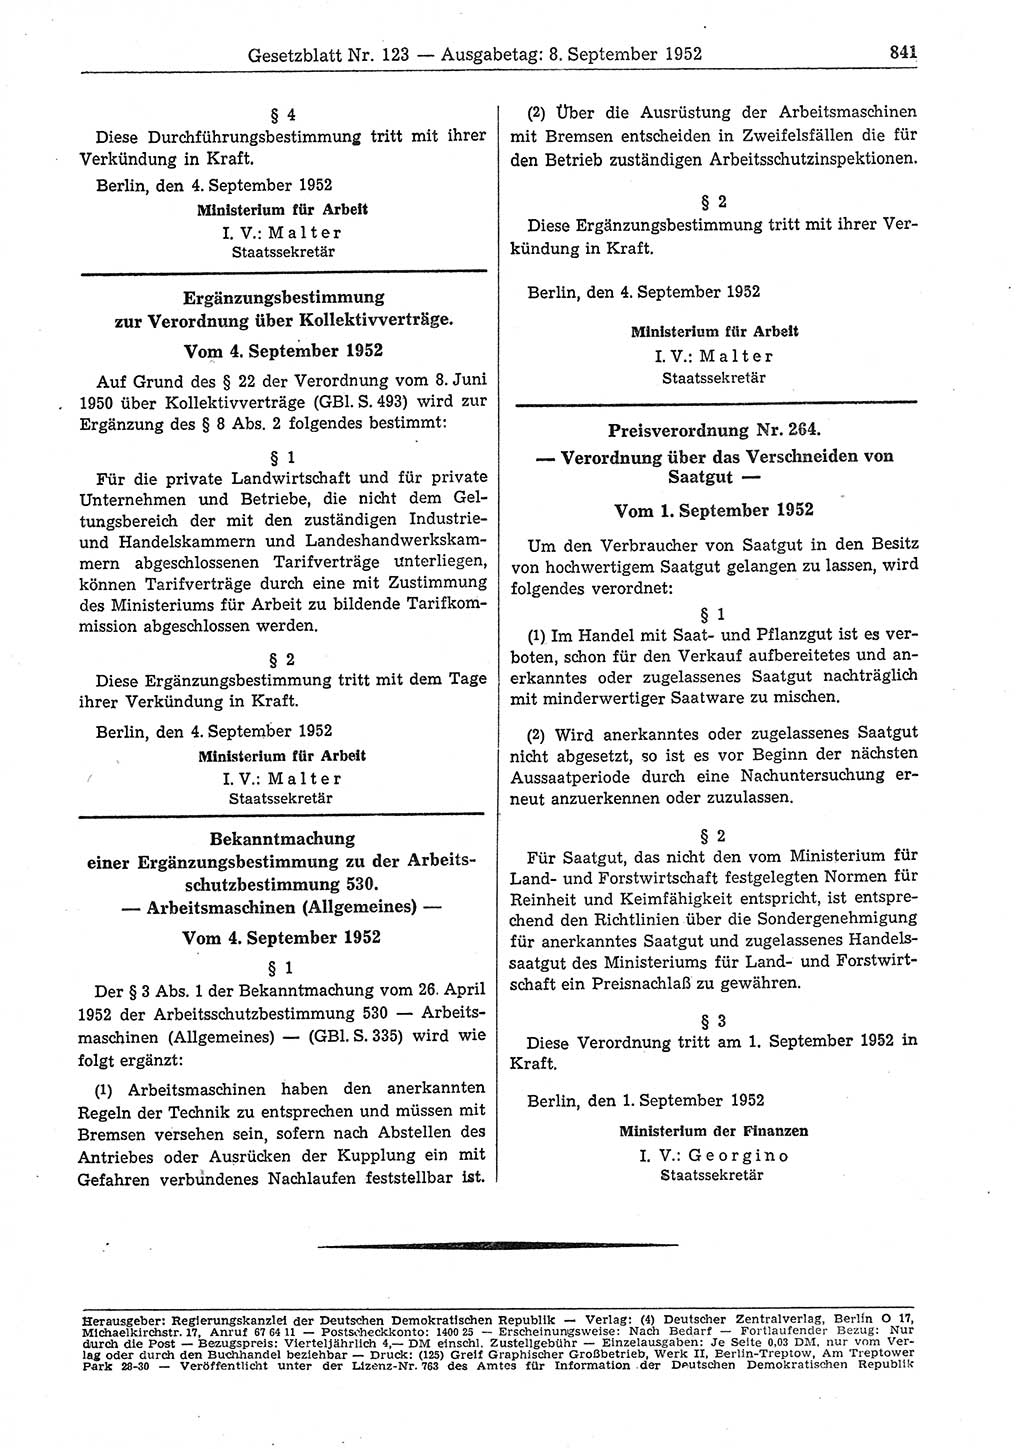 Gesetzblatt (GBl.) der Deutschen Demokratischen Republik (DDR) 1952, Seite 841 (GBl. DDR 1952, S. 841)